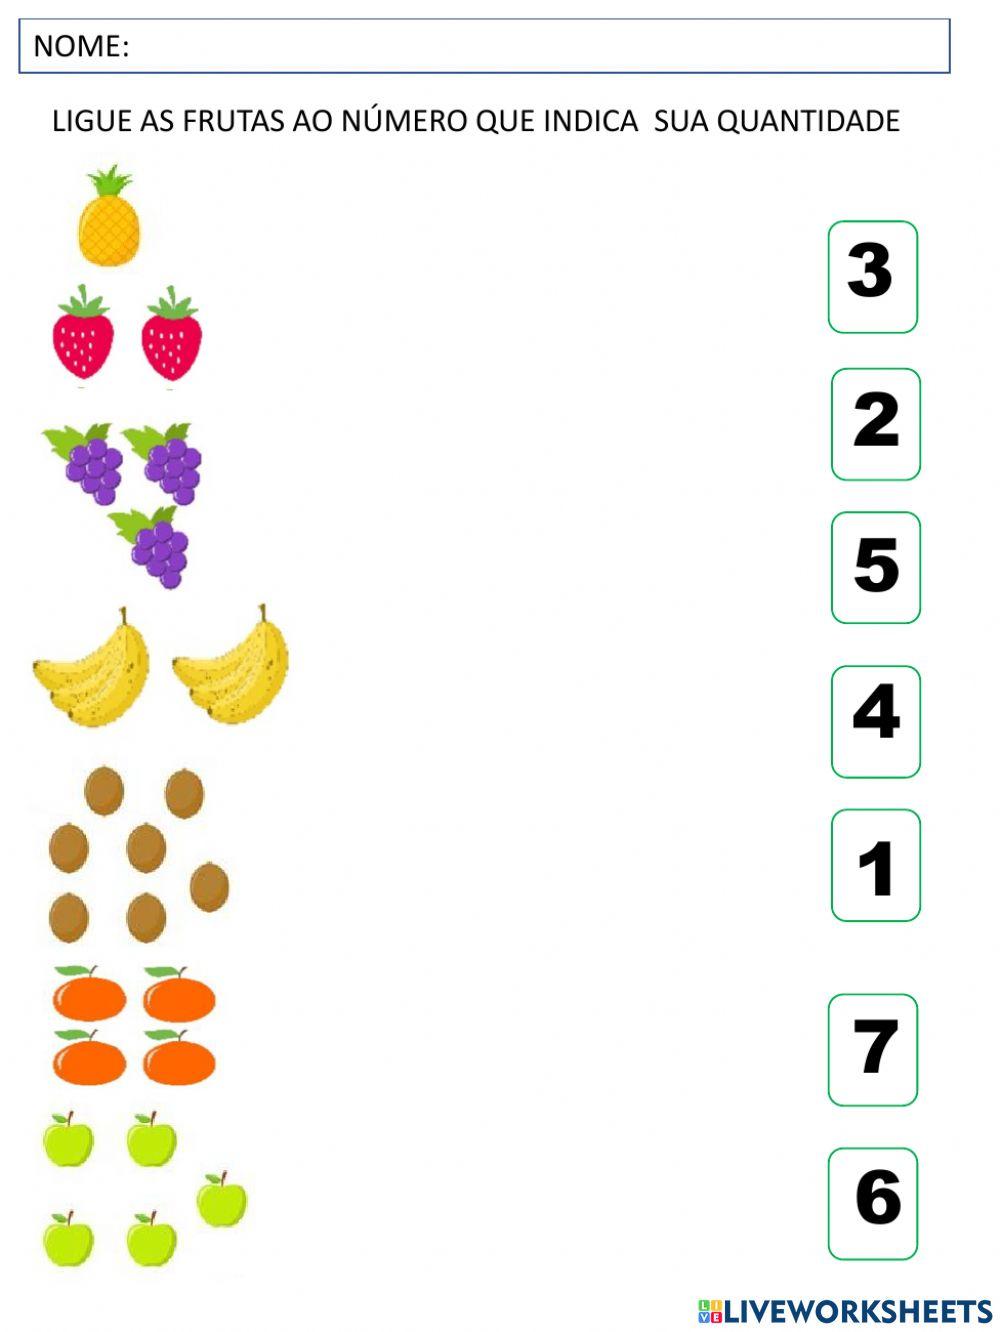 Ligue as frutas ao numero de sua quantidade